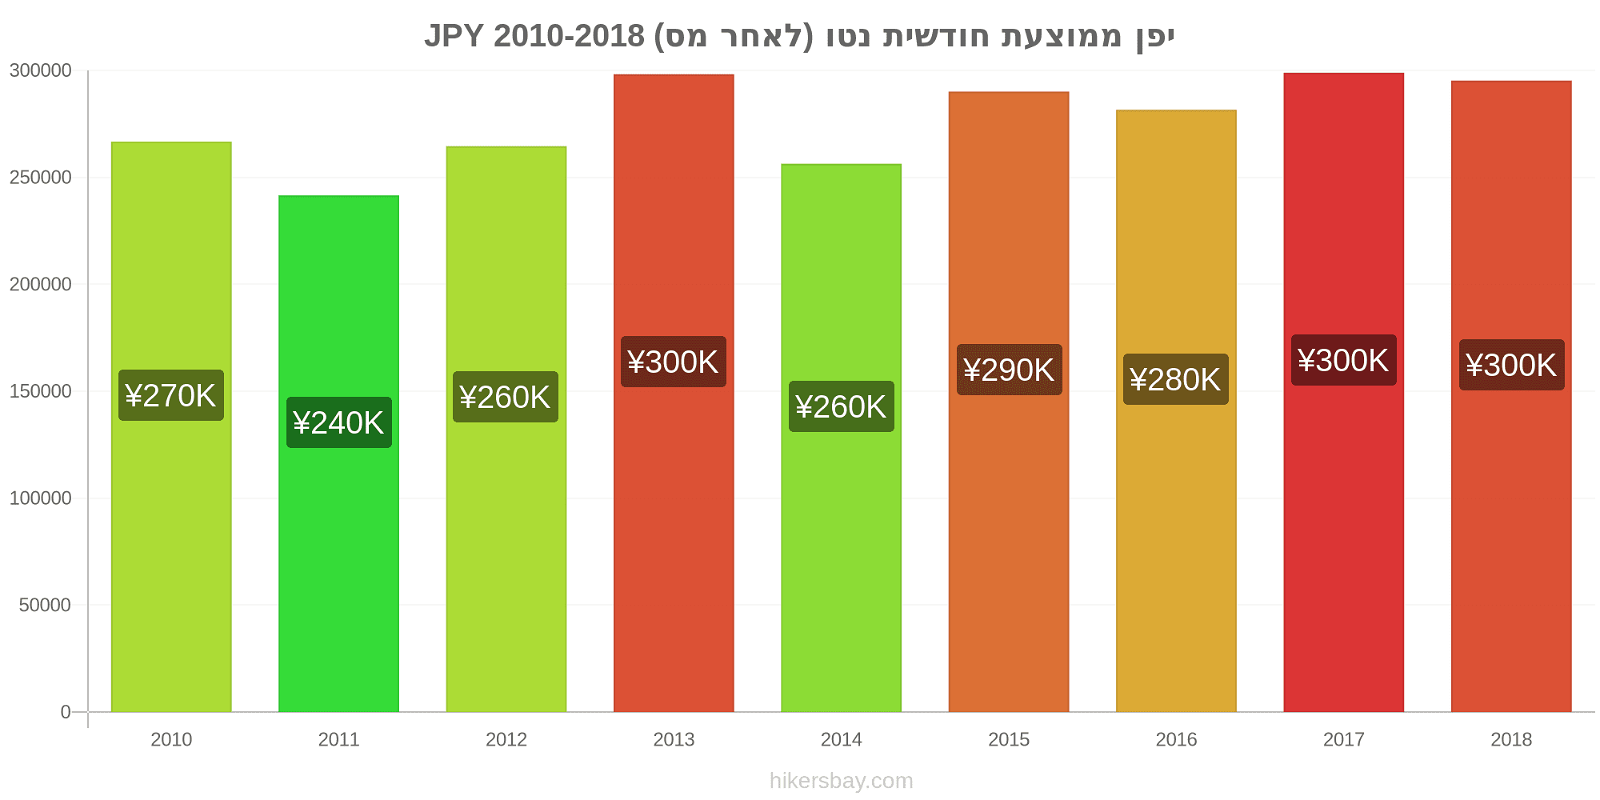 יפן שינויי מחיר ממוצע שכר נטו חודשי (לאחר מס) hikersbay.com